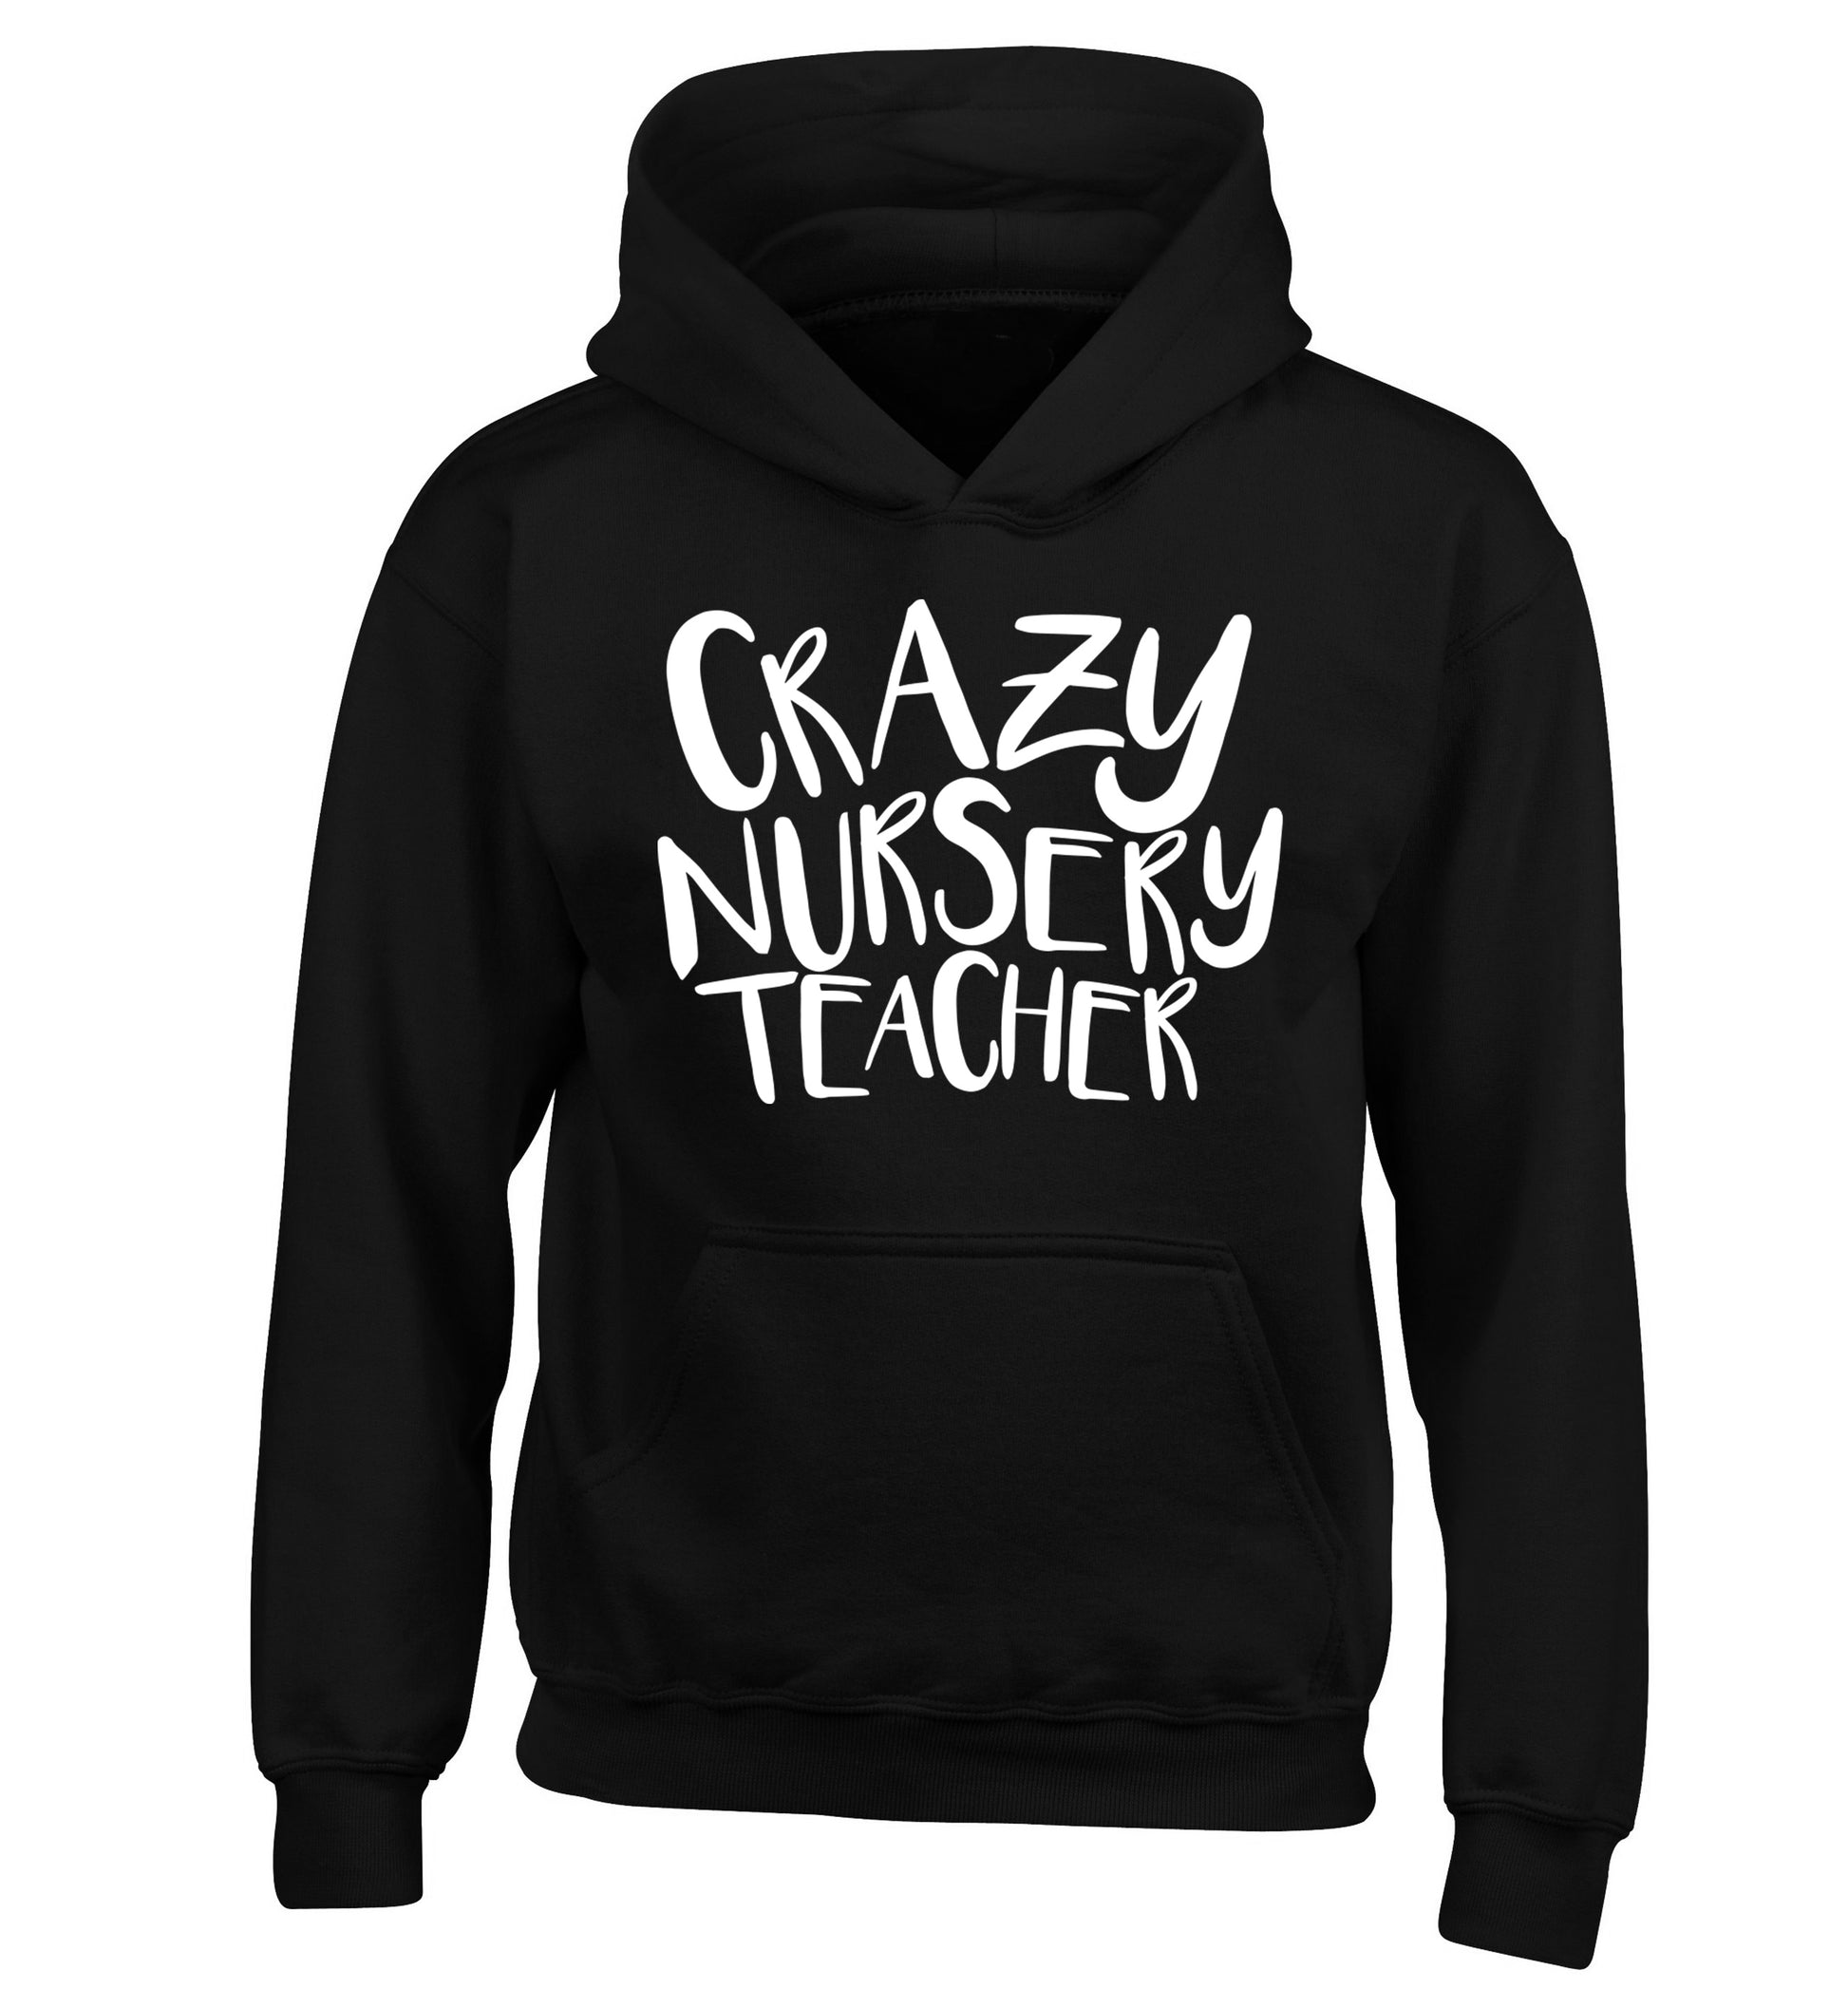 Crazy nursery teacher children's black hoodie 12-13 Years